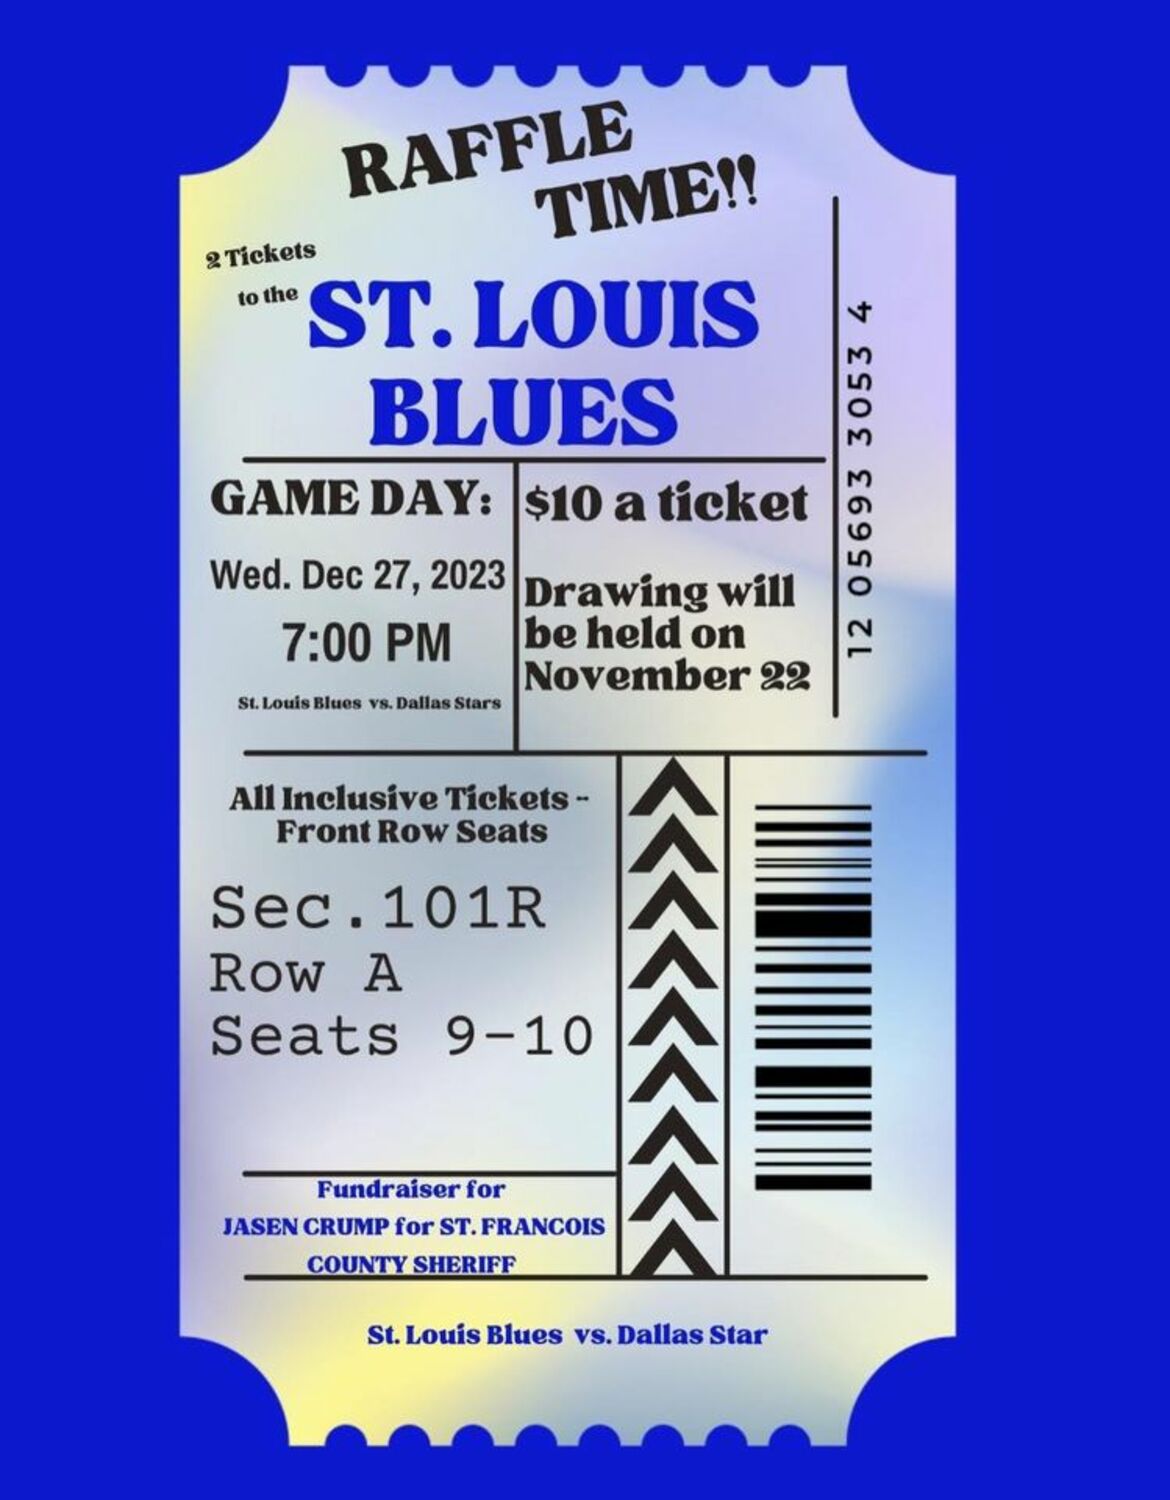 Win St. Louis Blues tickets